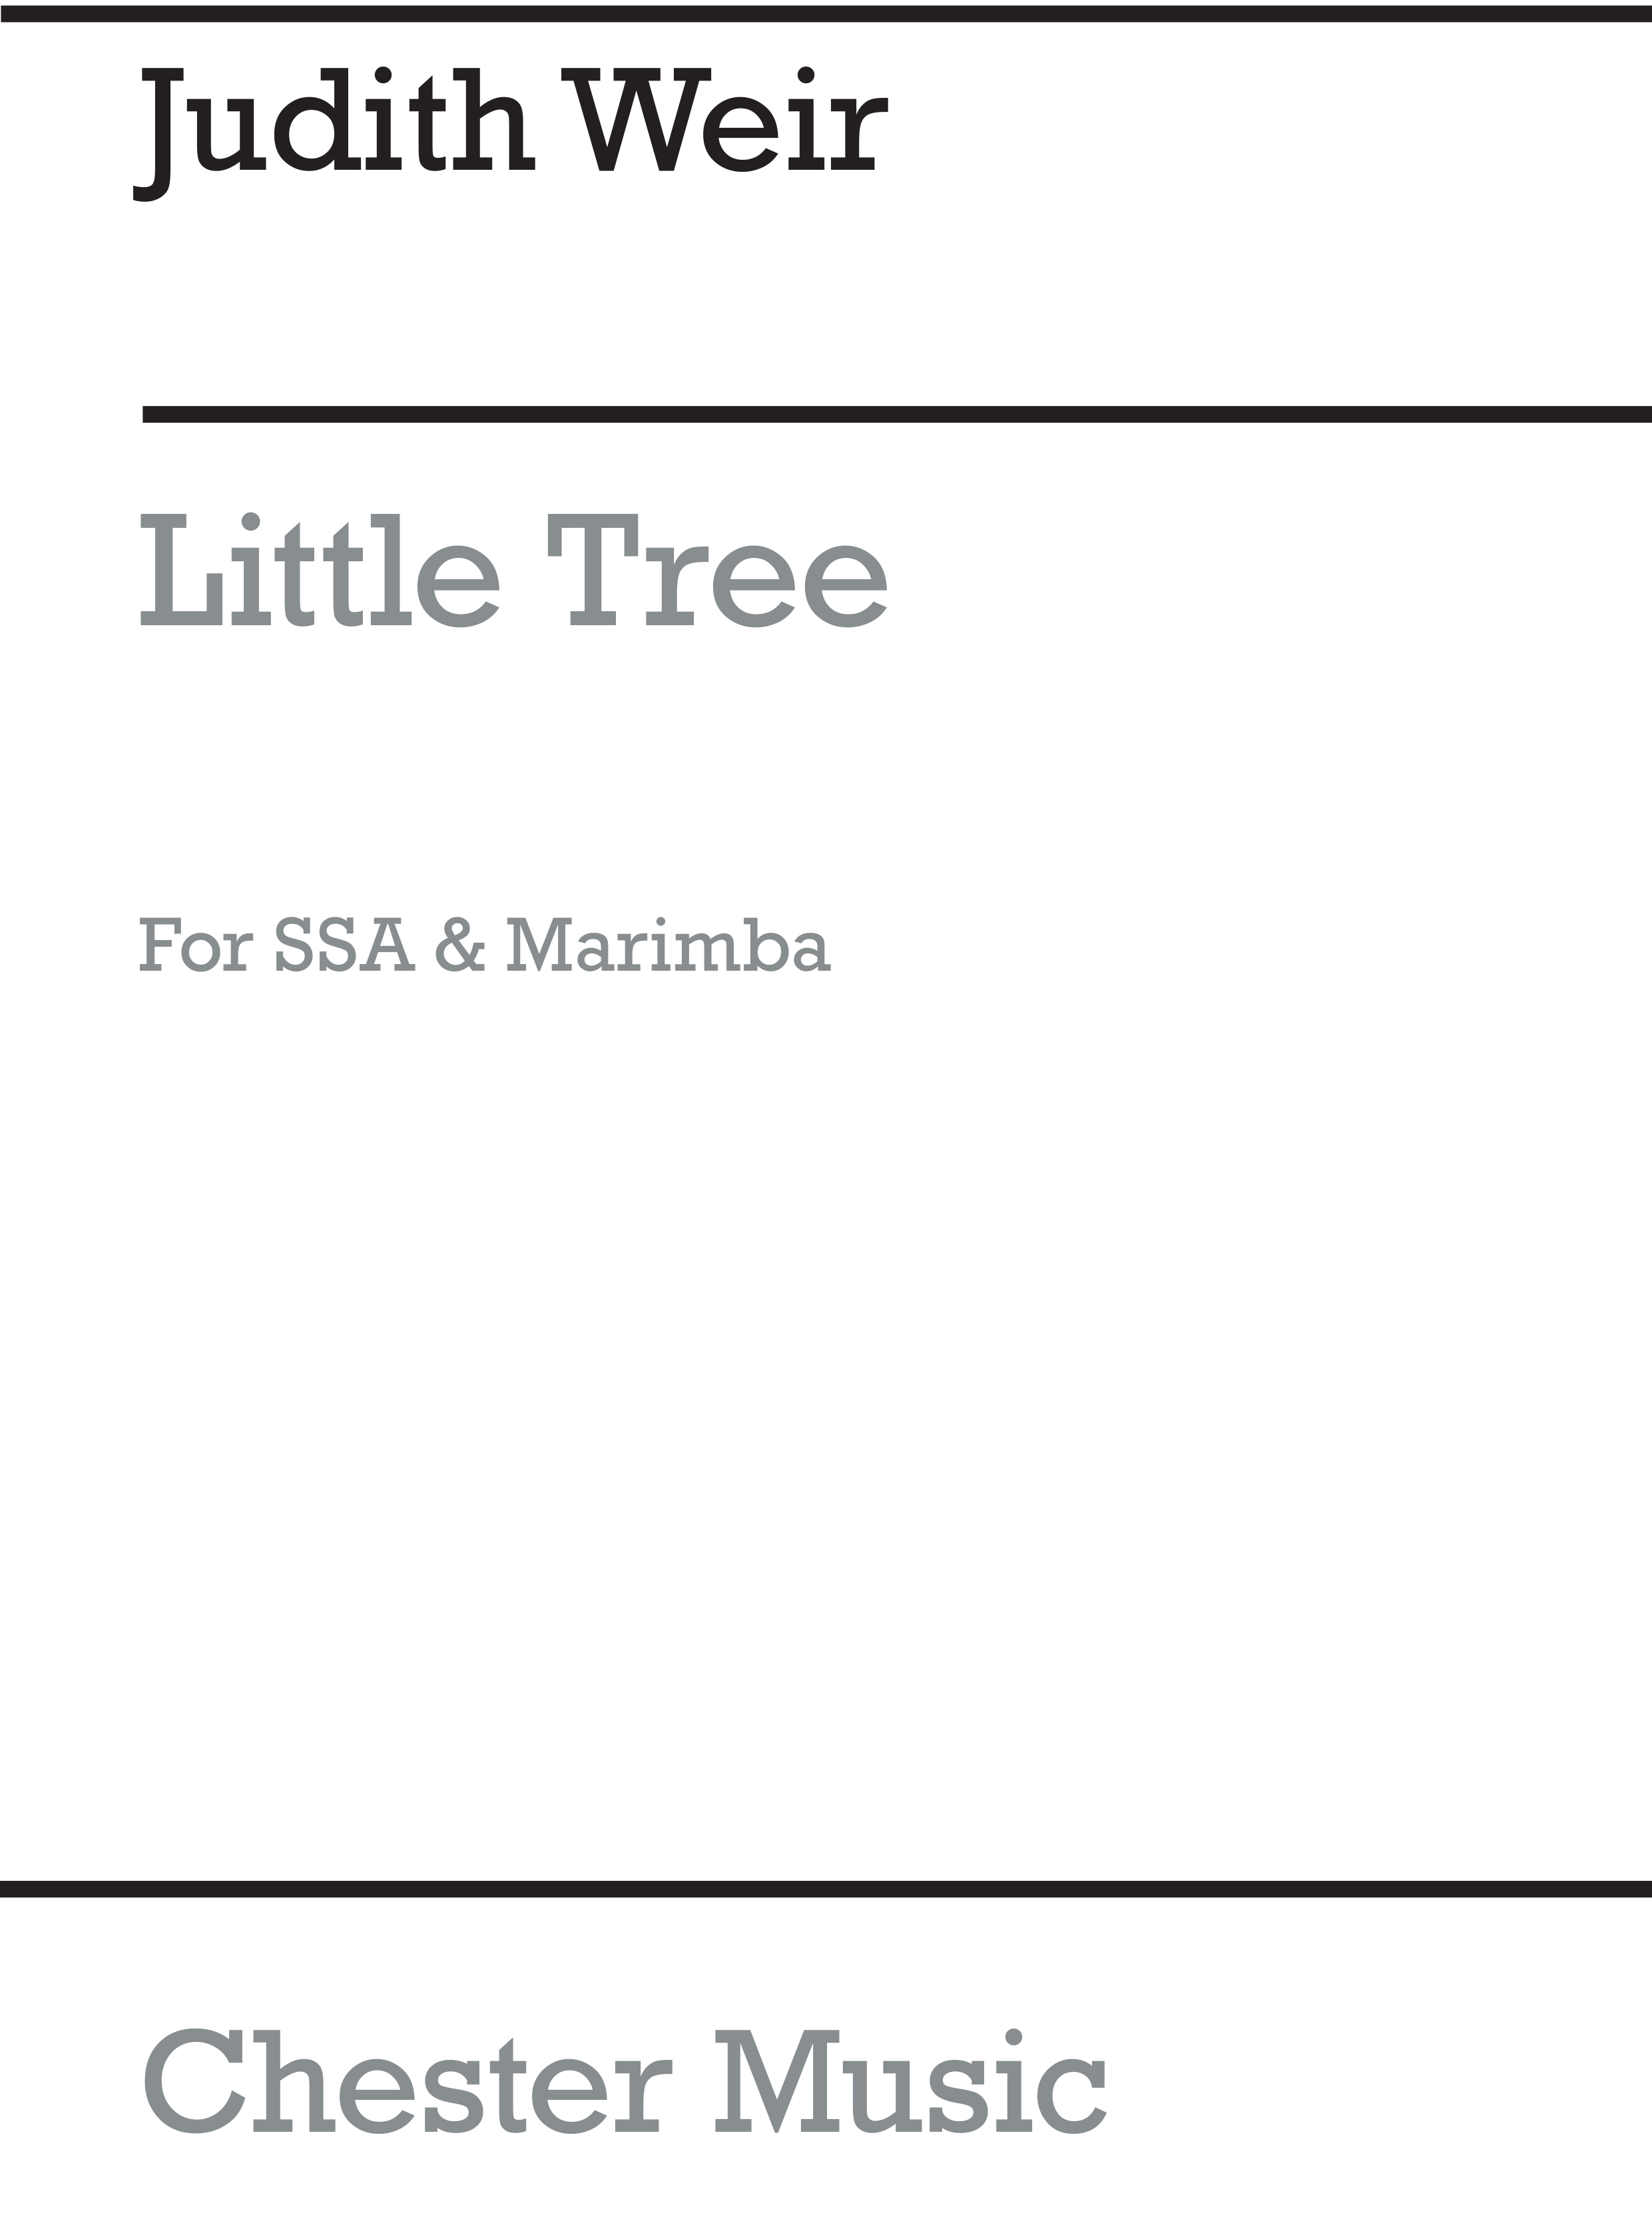 Judith Weir: Little Tree (Marimba Solo Part)